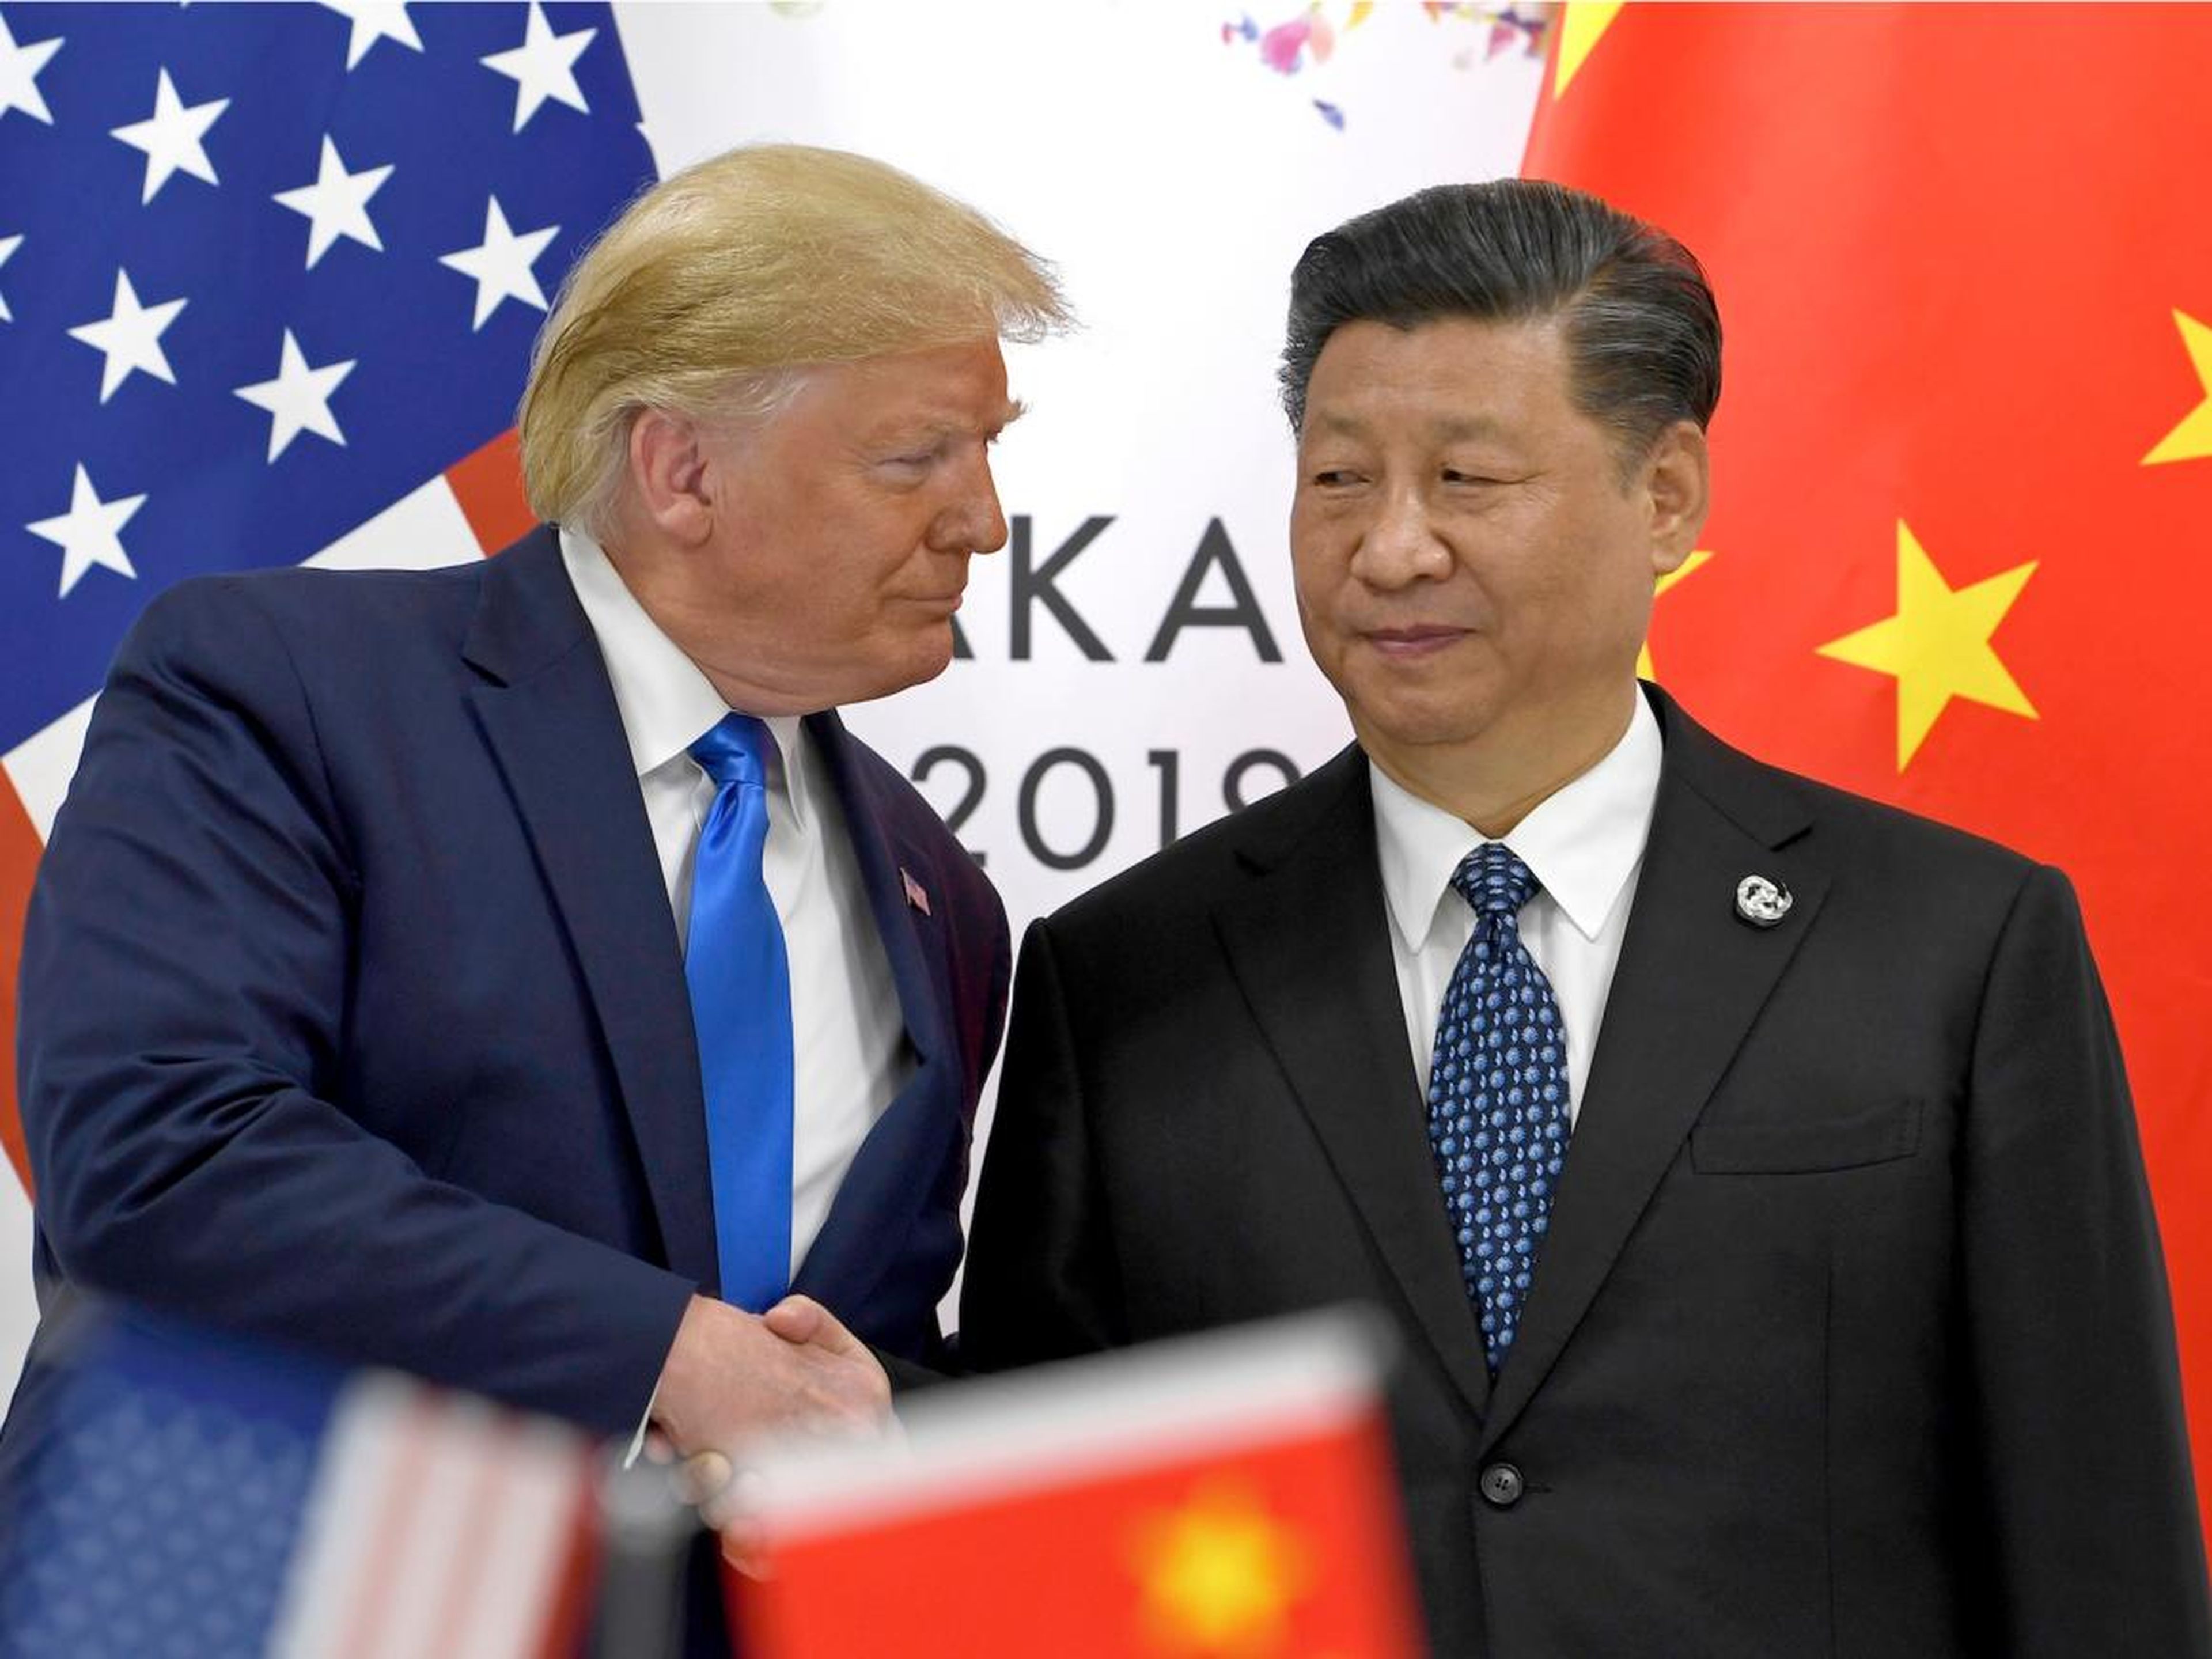 Donald Trump le da la mano al presidente c hino Xi Jinnping en una reunión durante el G-20 de Osaka, Japón.